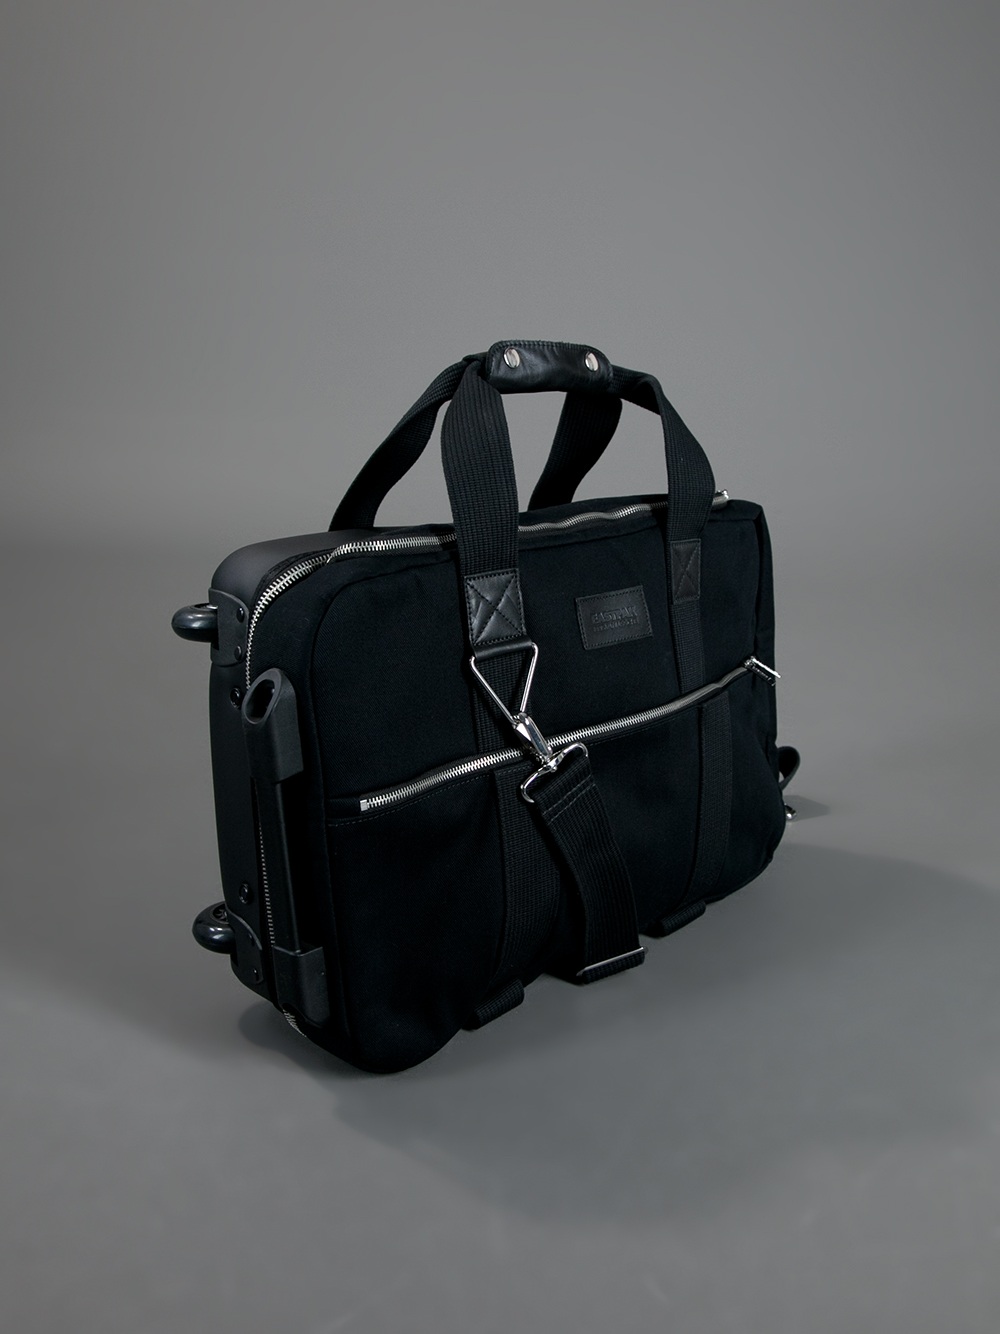 Durable, High Quality Leather Luggage | Leatherluggage.xyz